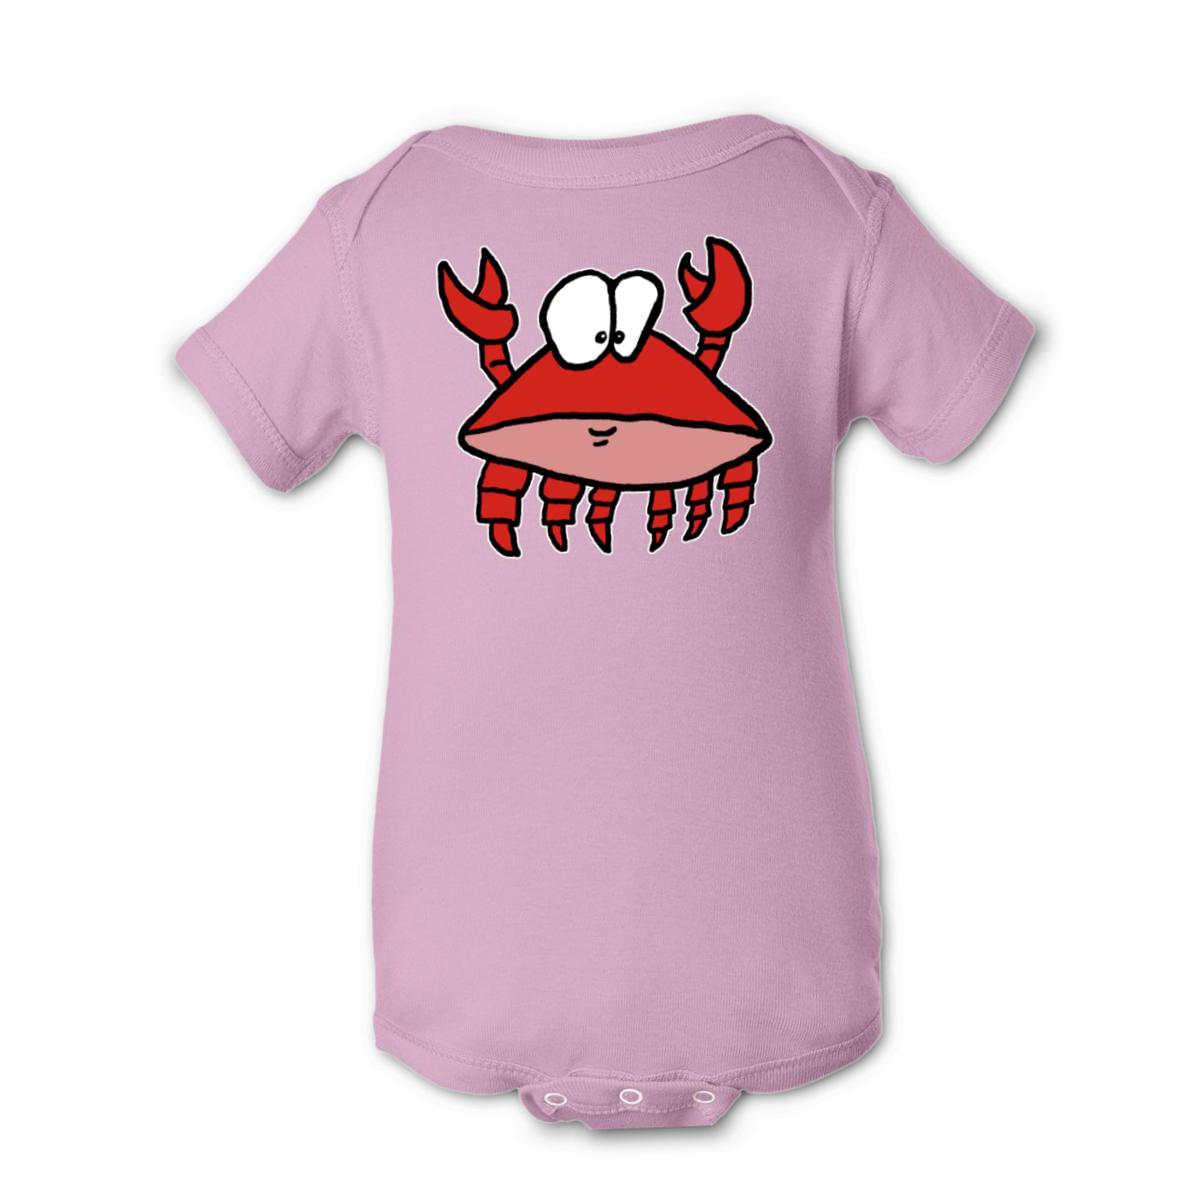 Crab 2.0 Onesie 24M pink